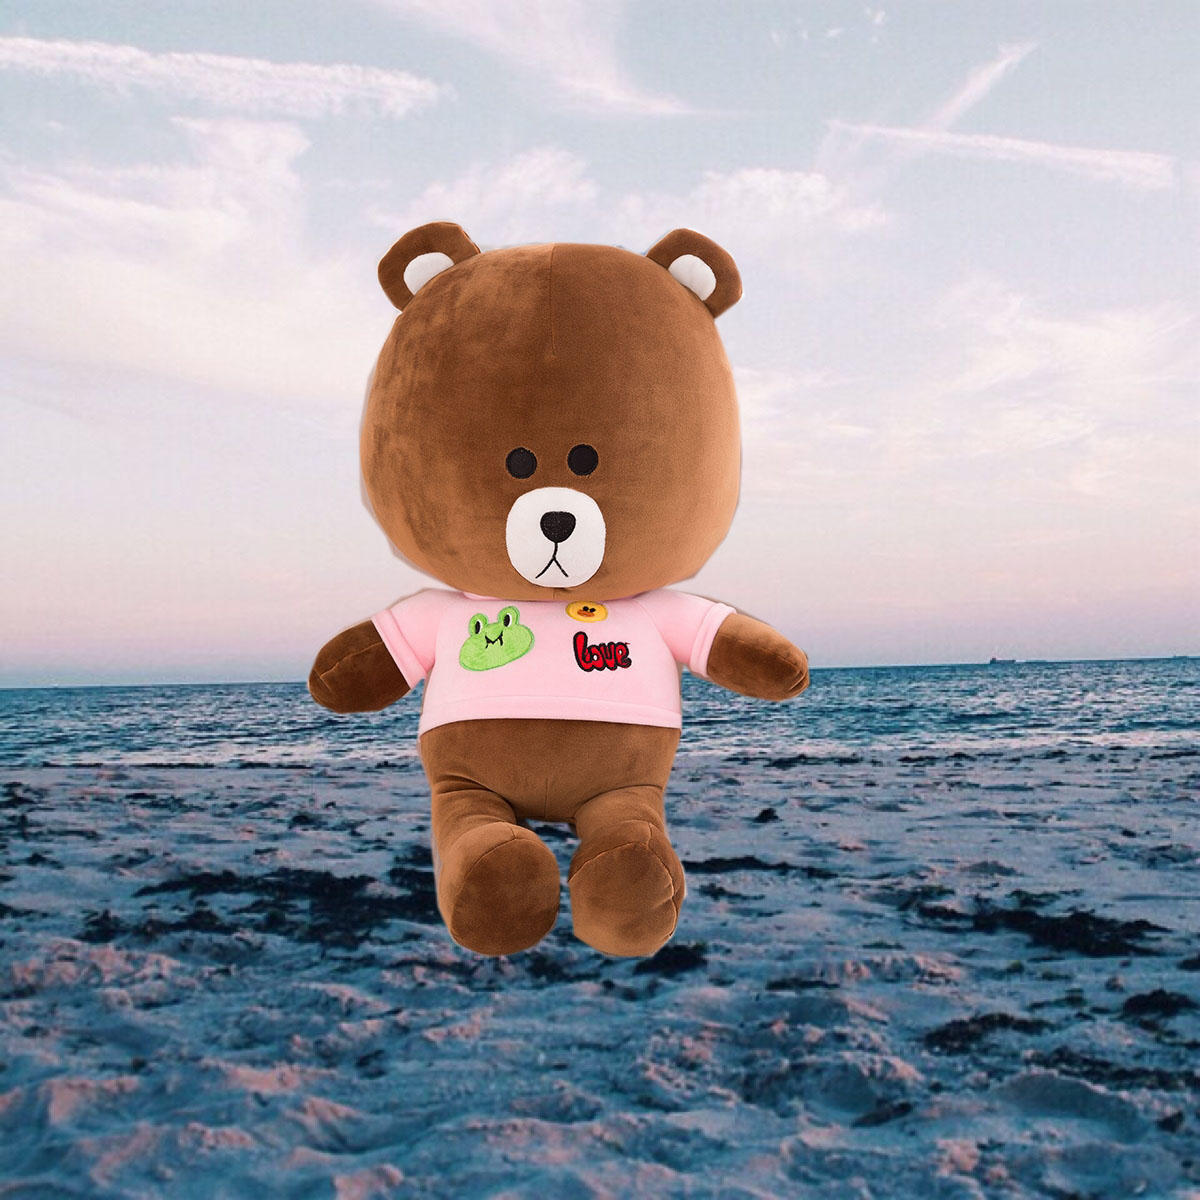 布朗熊公仔毛绒玩具大熊抱枕抱抱熊泰迪熊娃娃大号生日礼物送女友折扣优惠信息